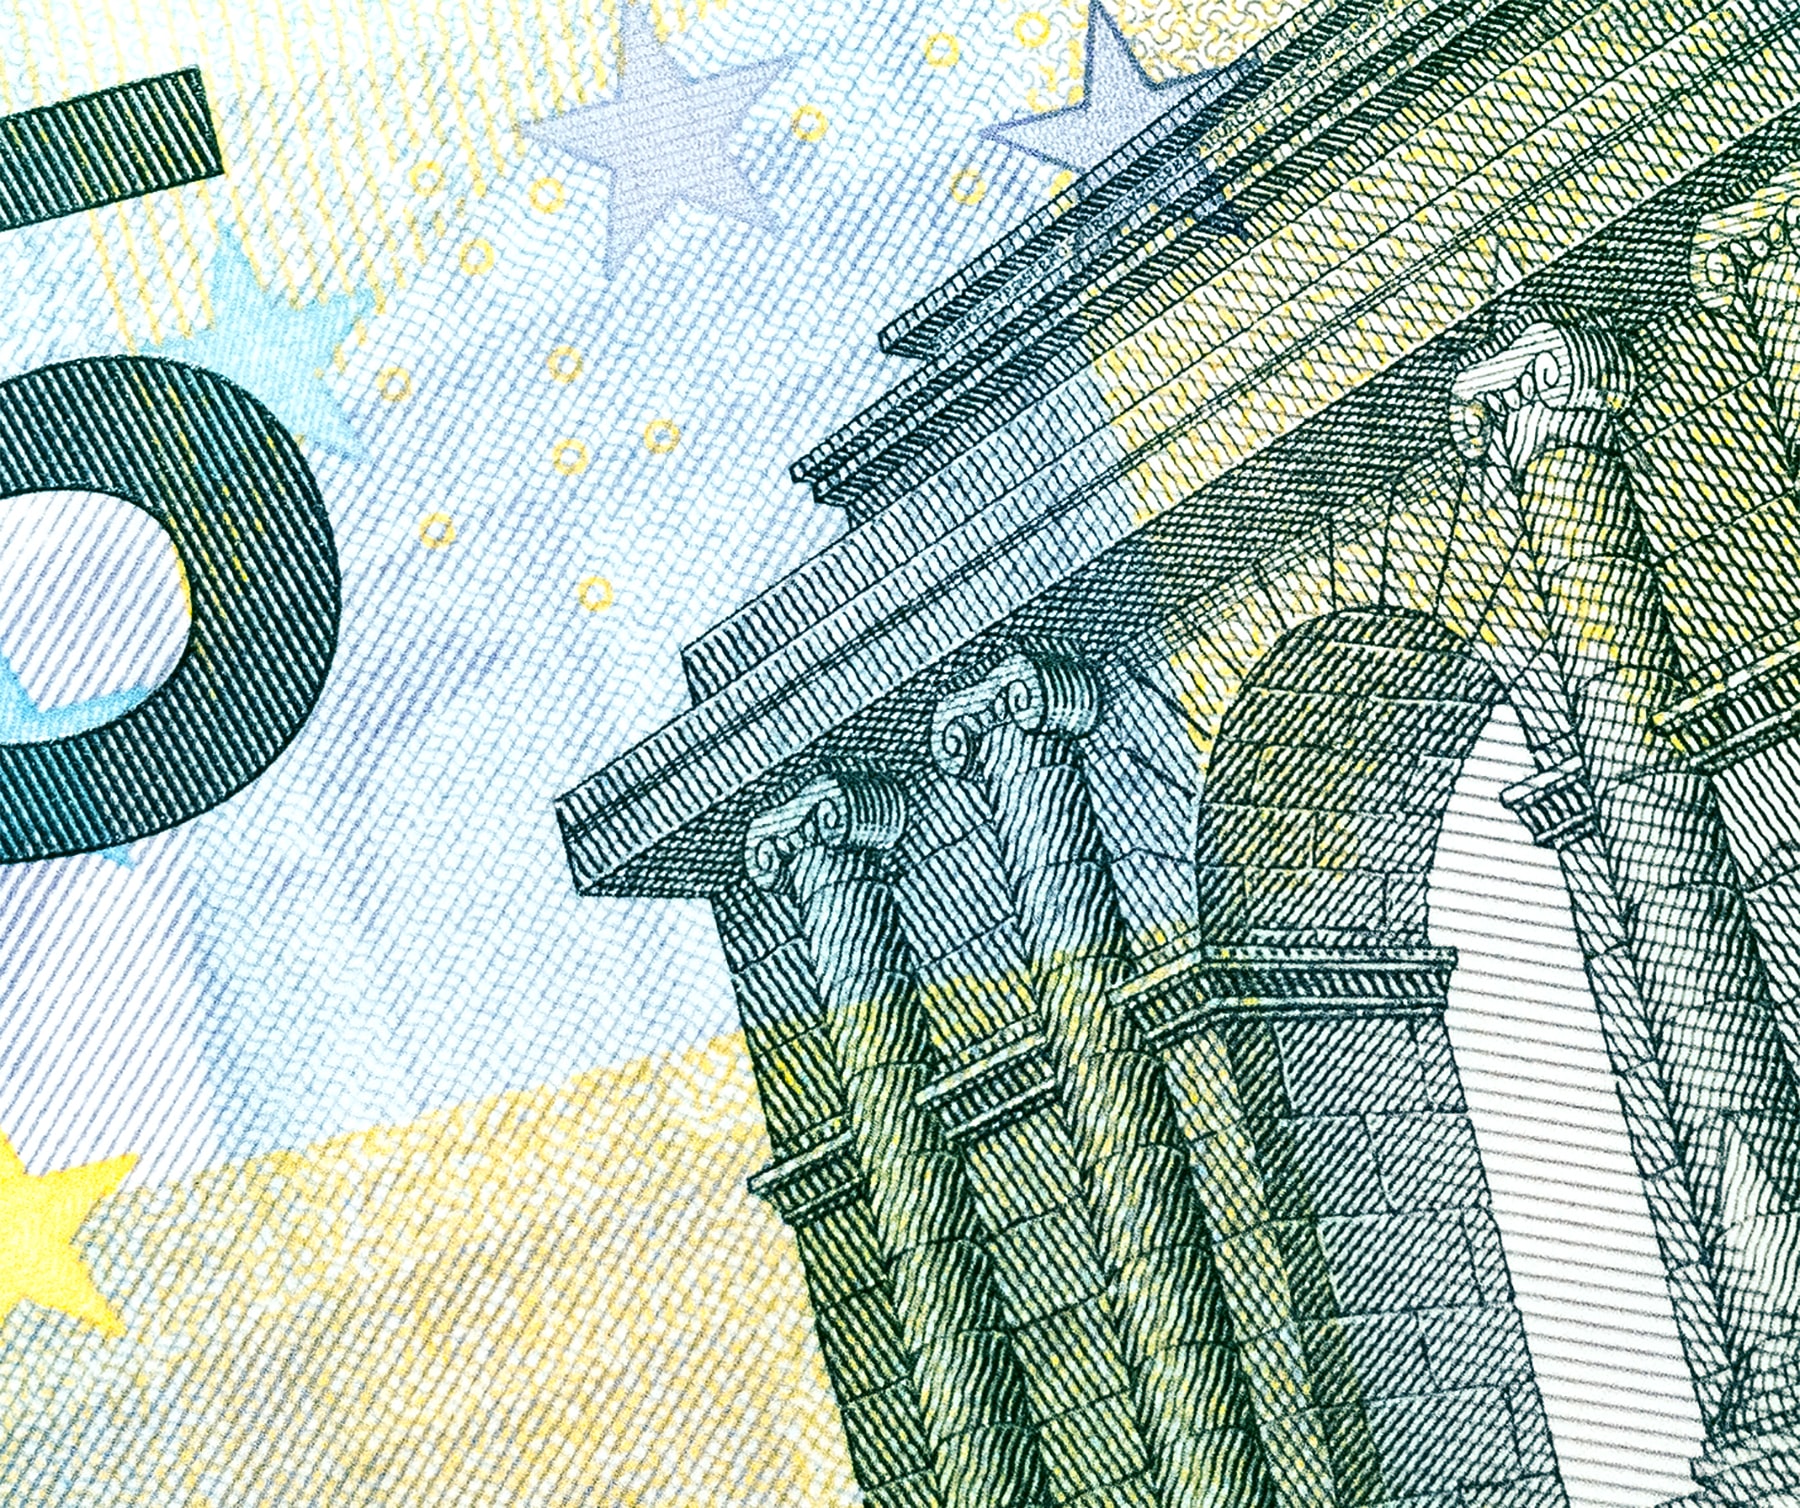 Das Bild zeigt eine Detailaufnahme eines Fünf-Euro-Scheins